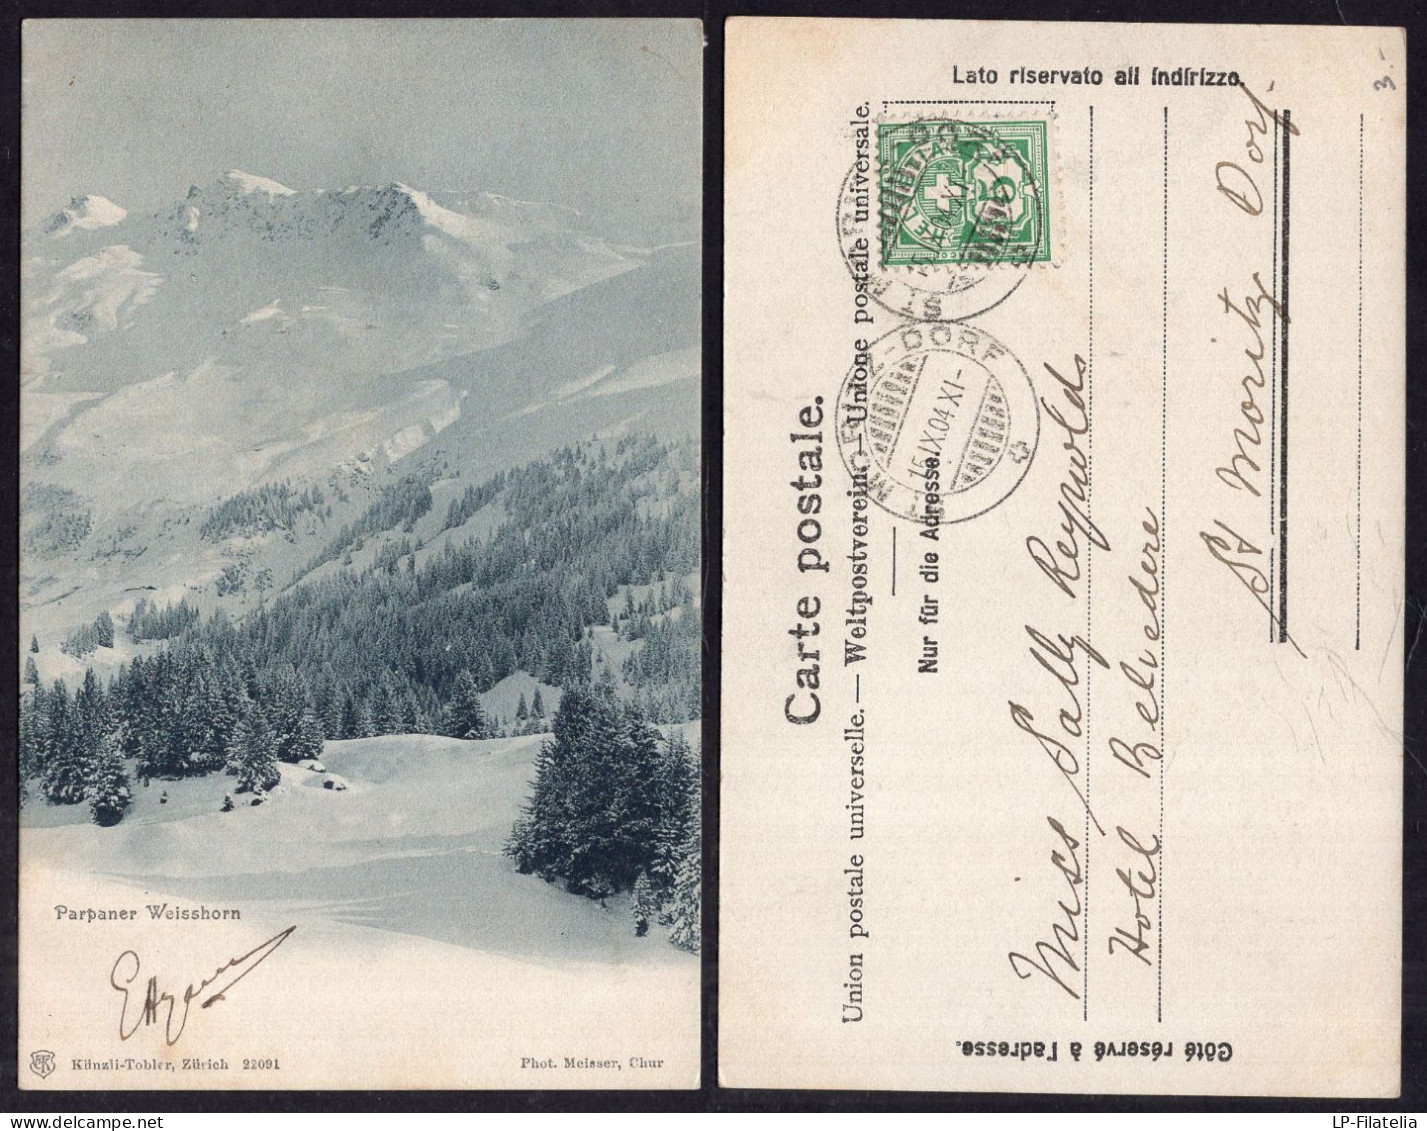 Switzerland - 1904 - Parpaner Weisshorn - Parpan